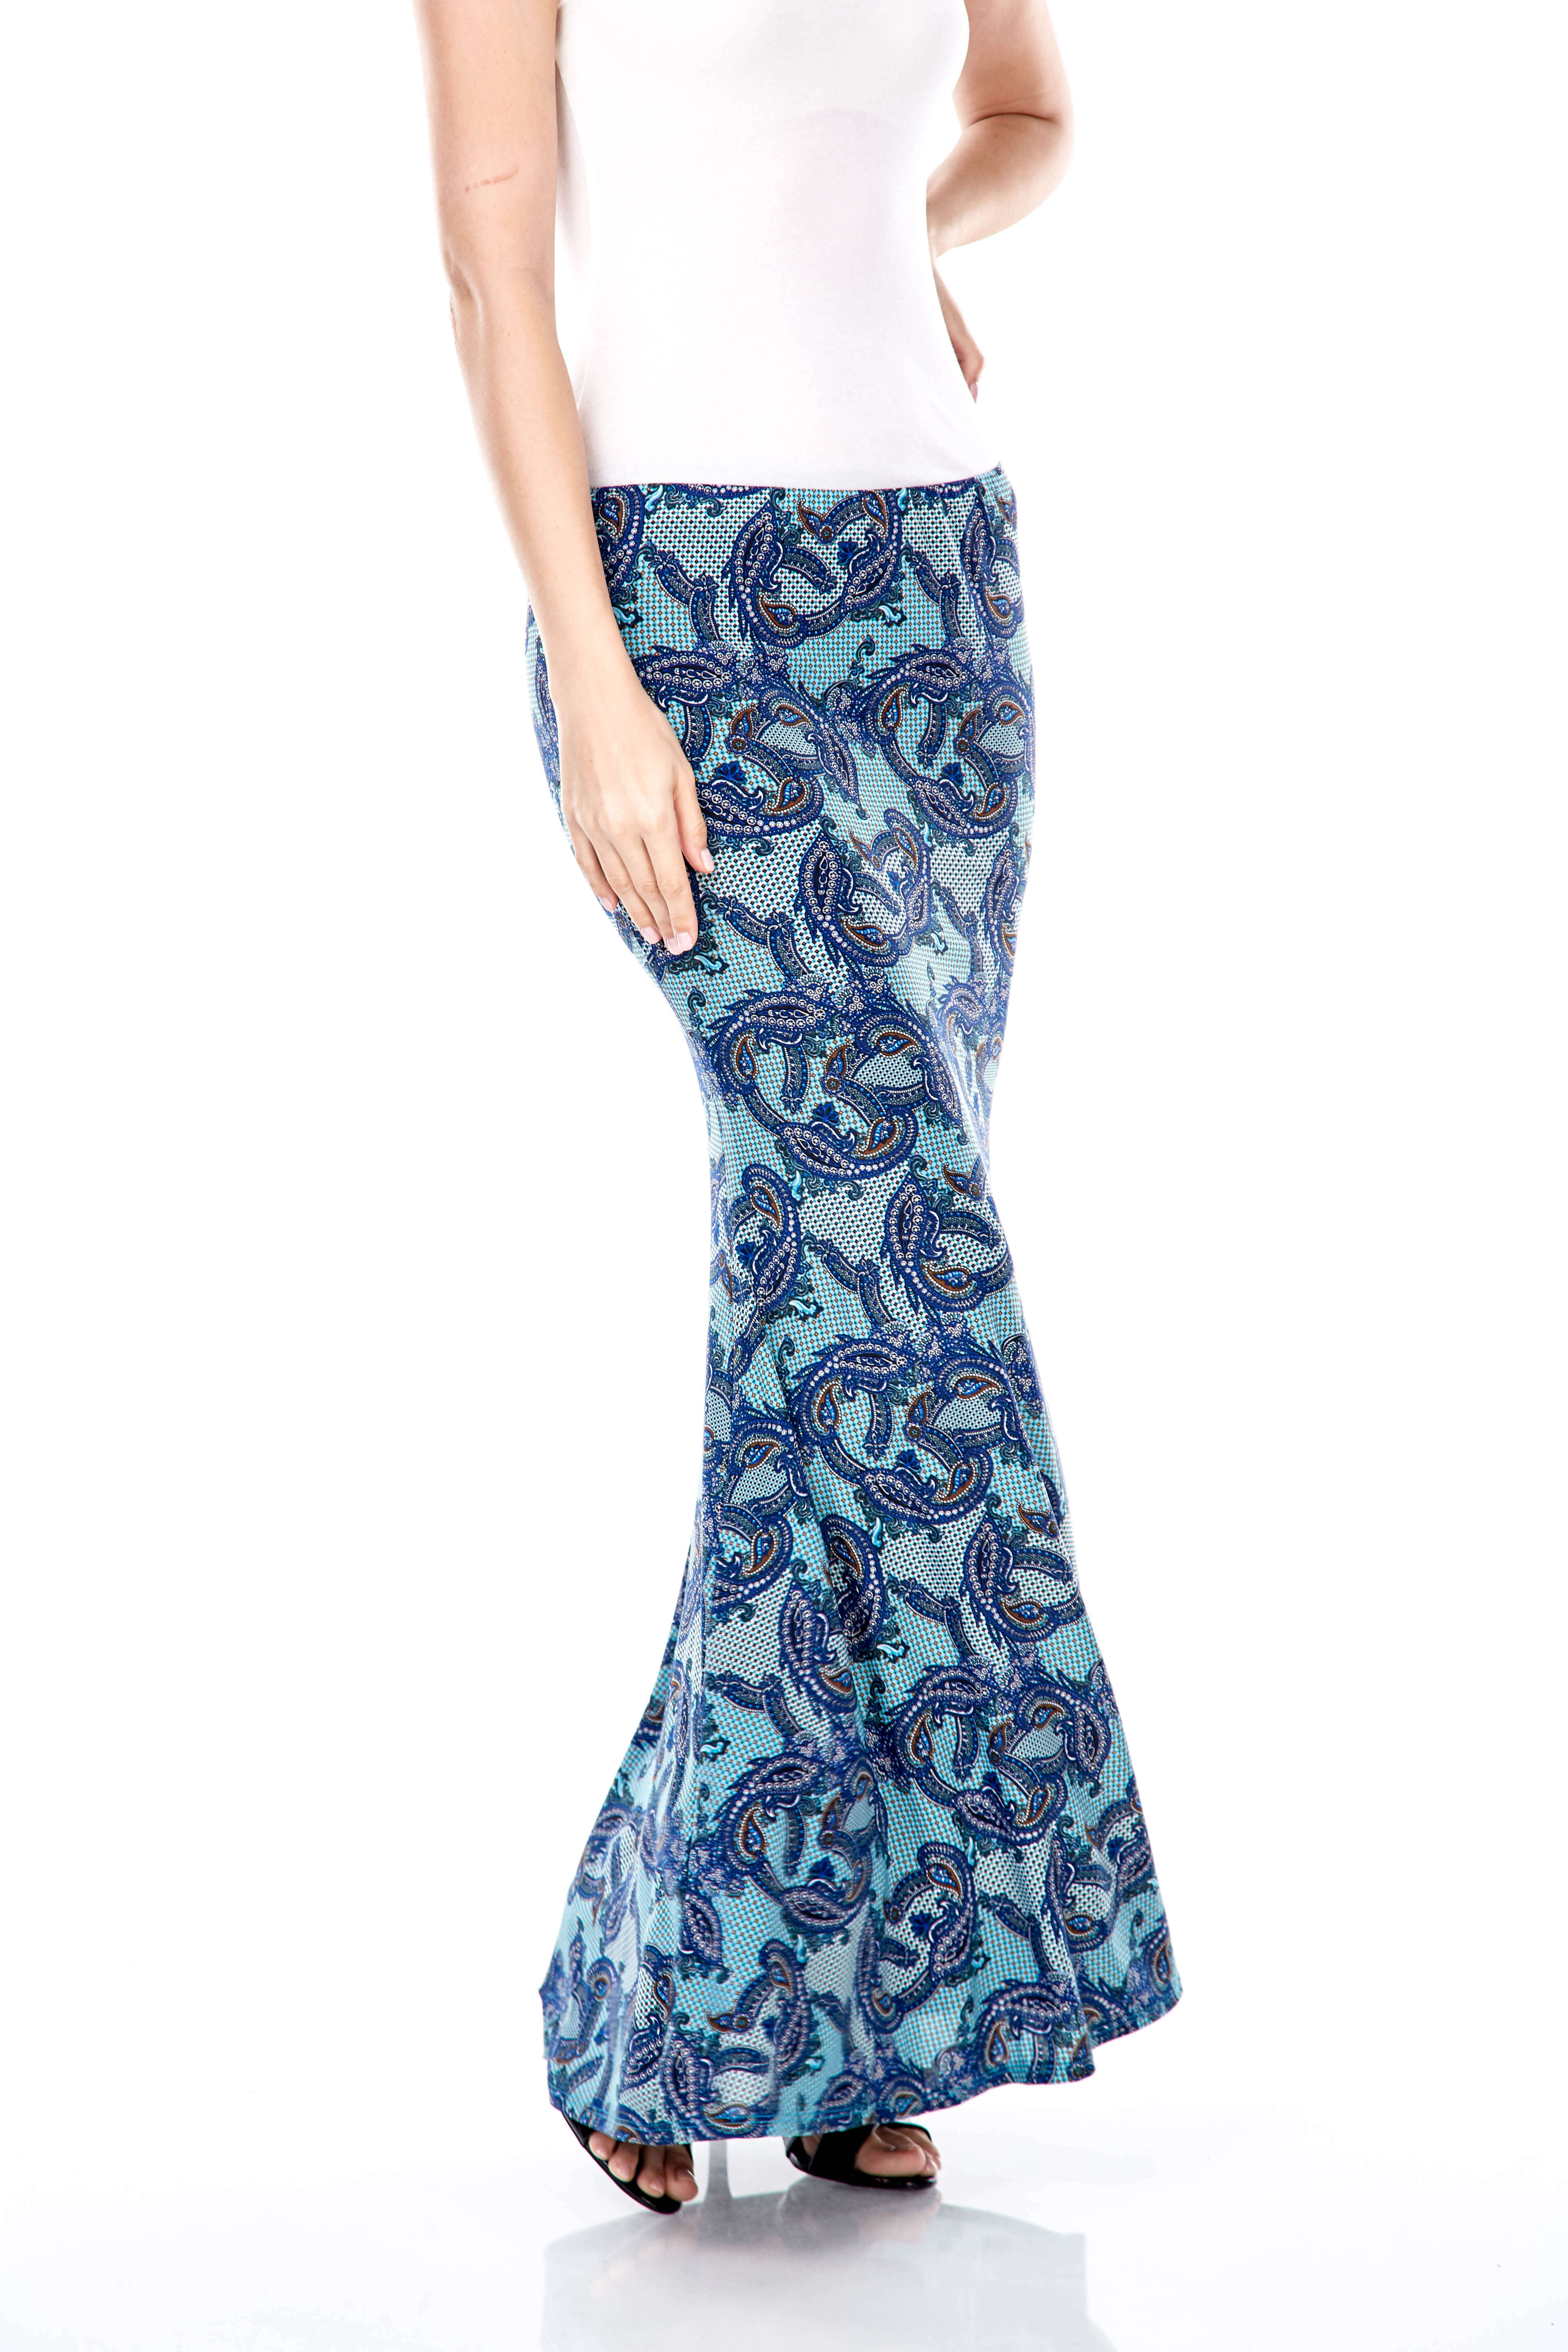 Wilda Turquoise Paisley Skirt (5)